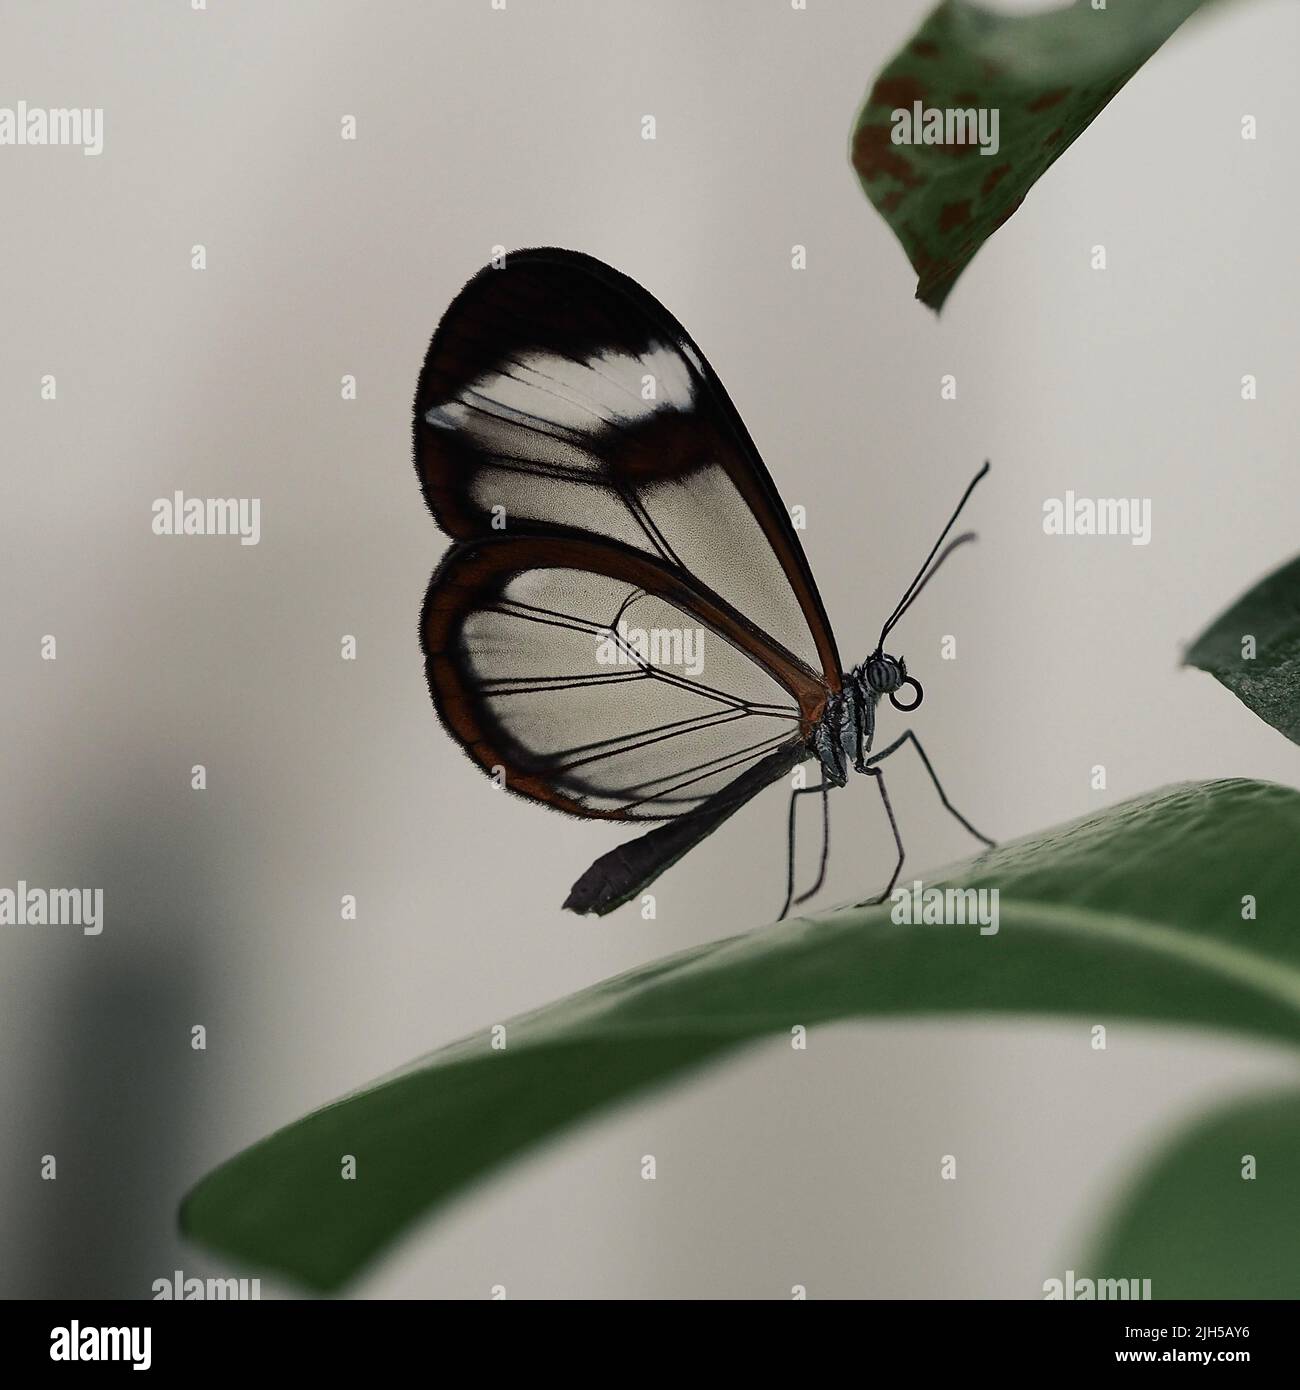 Glasflügelfalter, Schmetterling mit durchsichtigen Flügeln Foto Stock